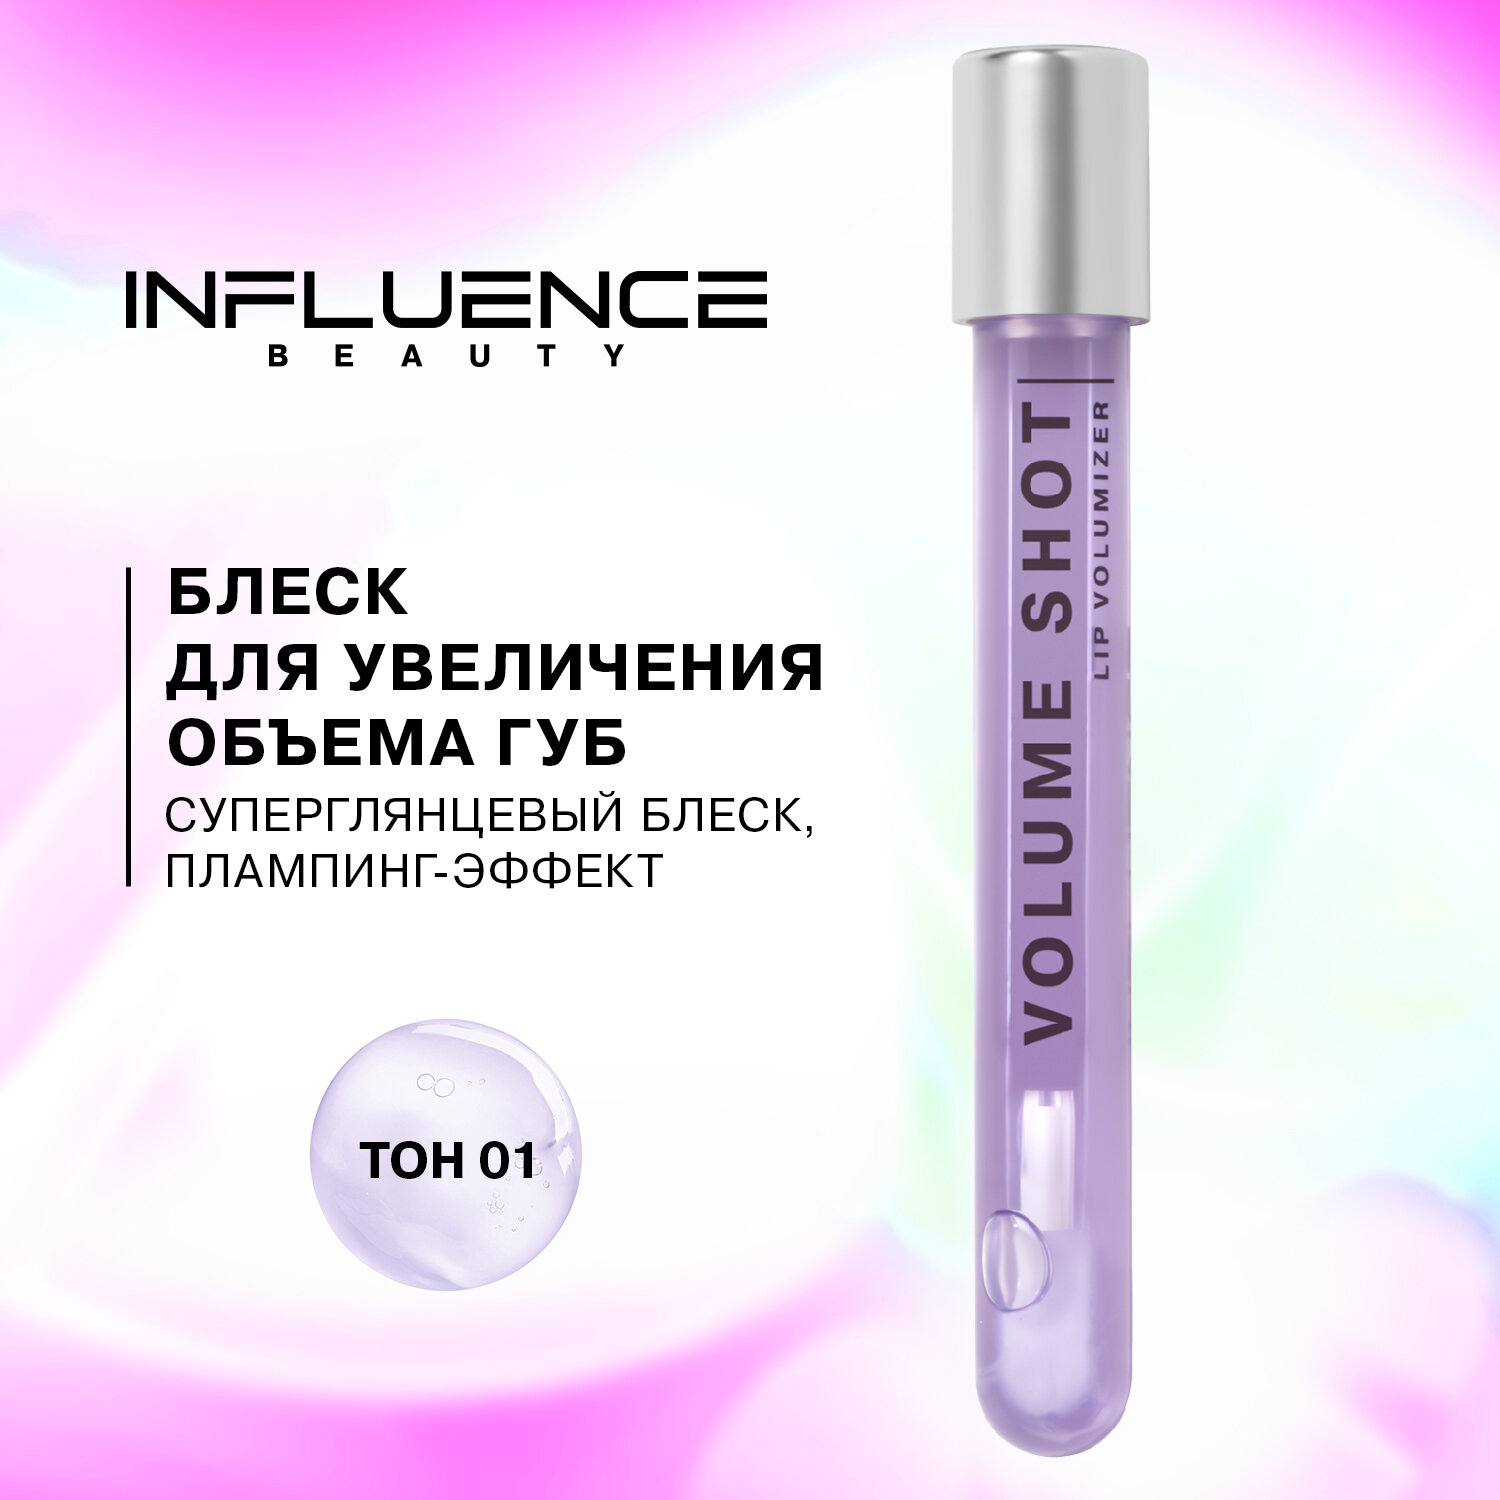 Блеск для увеличения объема губ influence beauty Volume shot с эффектом плампинга, тон 01: полупрозрачный фиолетовый, 6мл